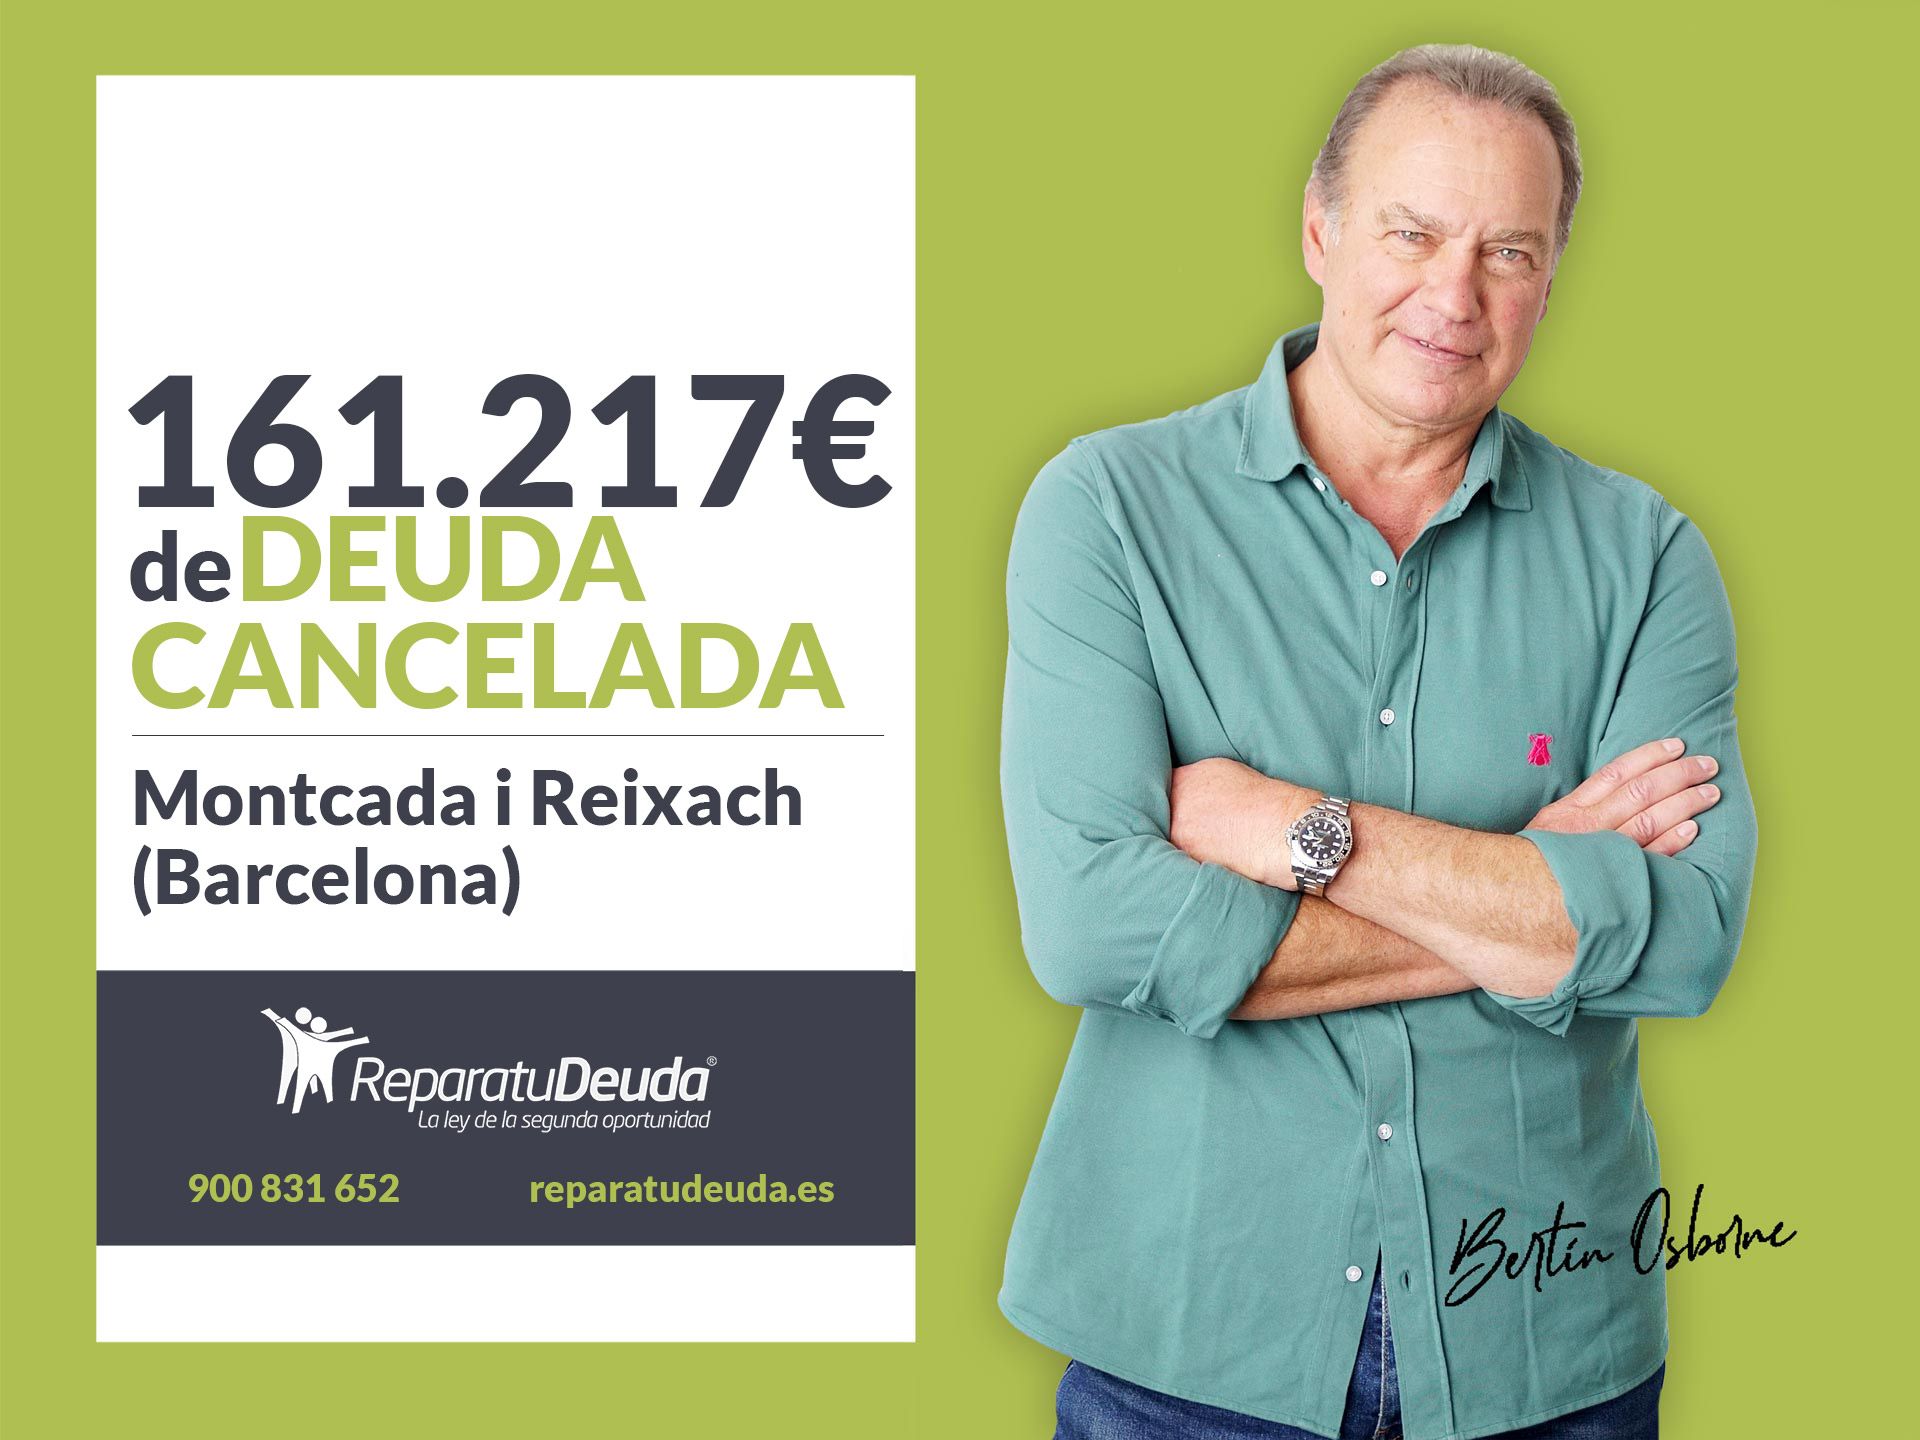 Repara tu Deuda cancela 161.217? en Montcada i Reixach (Barcelona) con la Ley de Segunda Oportunidad